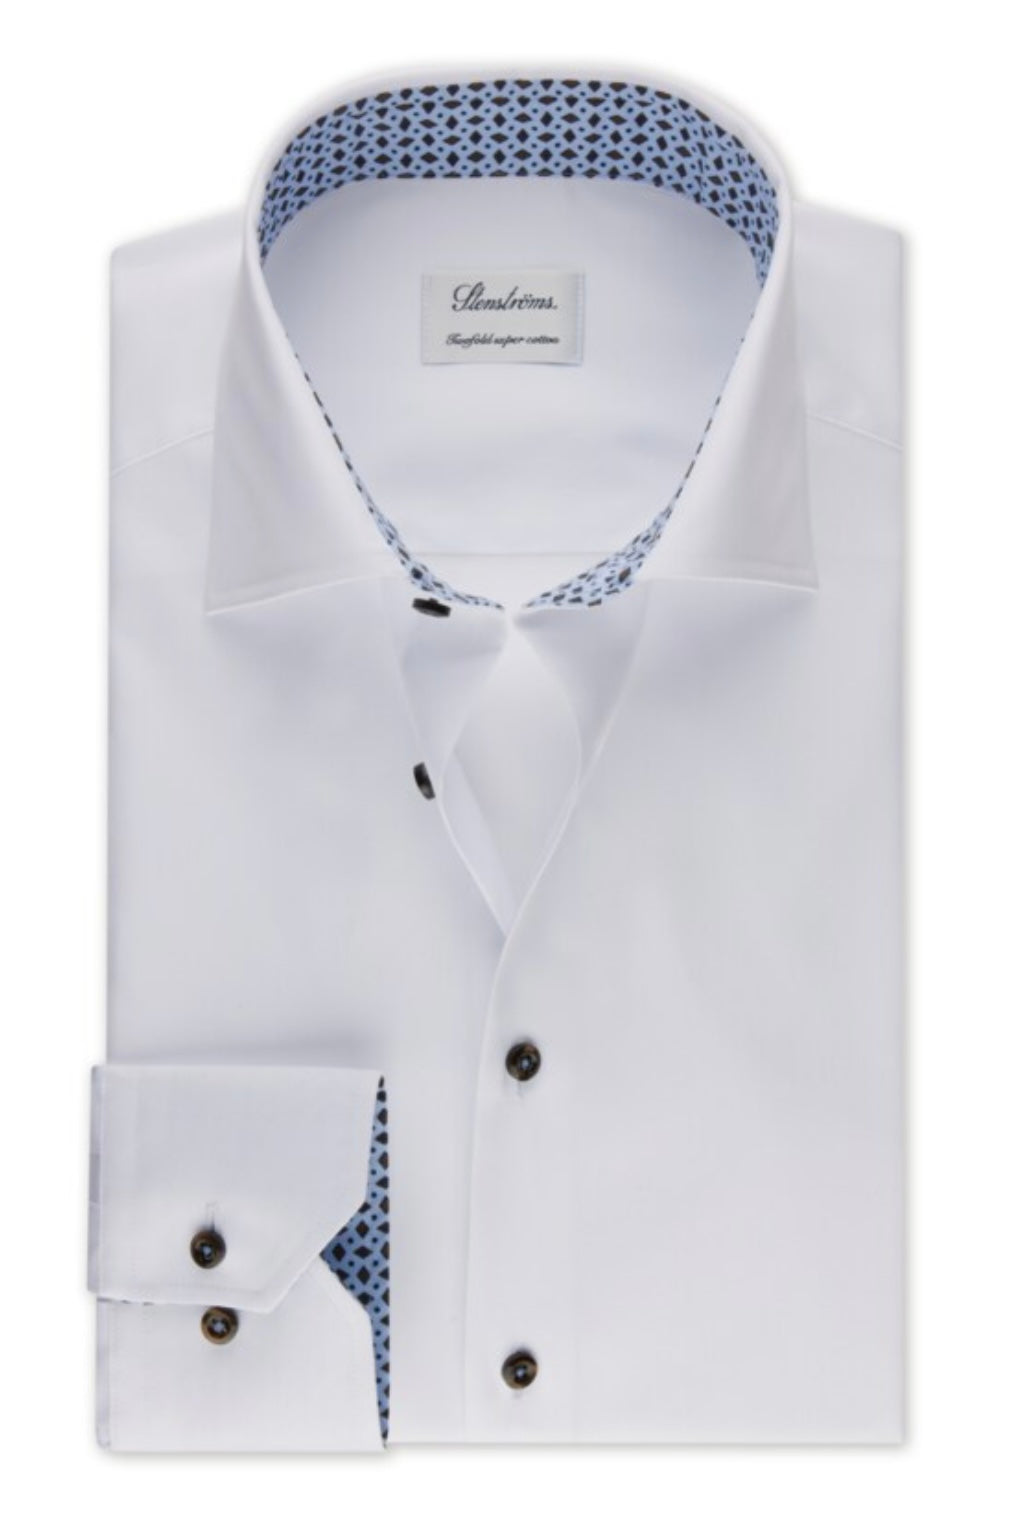 Stenströms Contrast shirt Slimline - 784771 0547 000